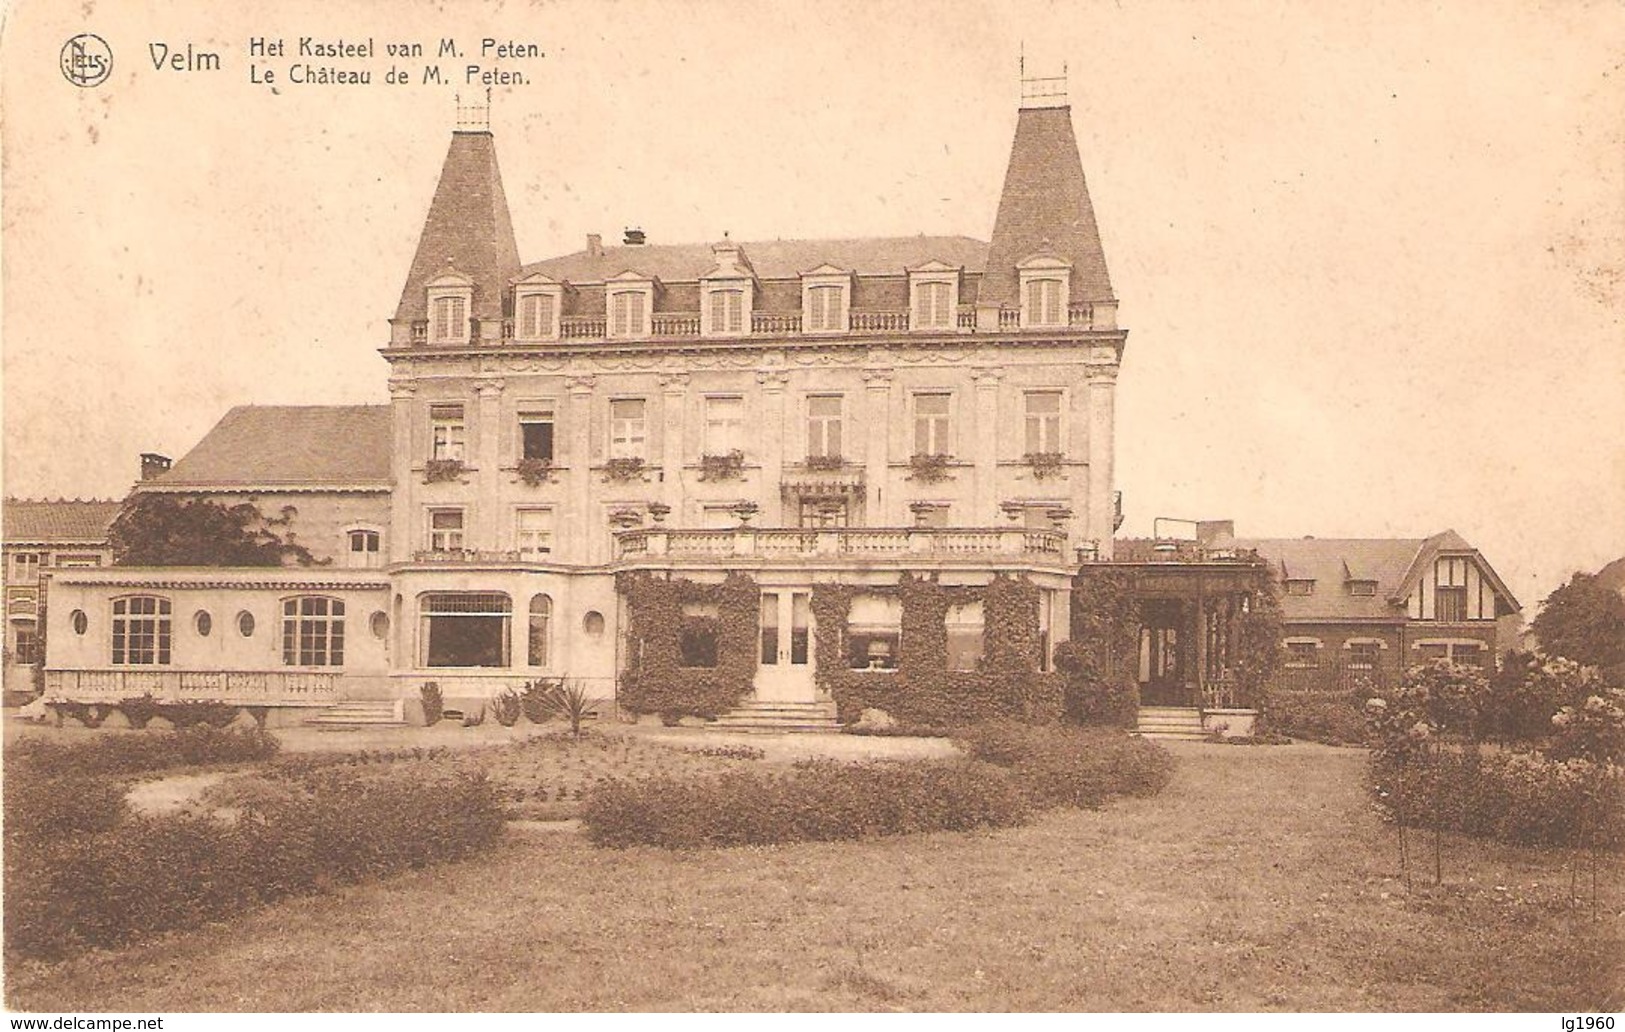 325a) VELM - Le Chateau De M. Peten - Sint-Truiden